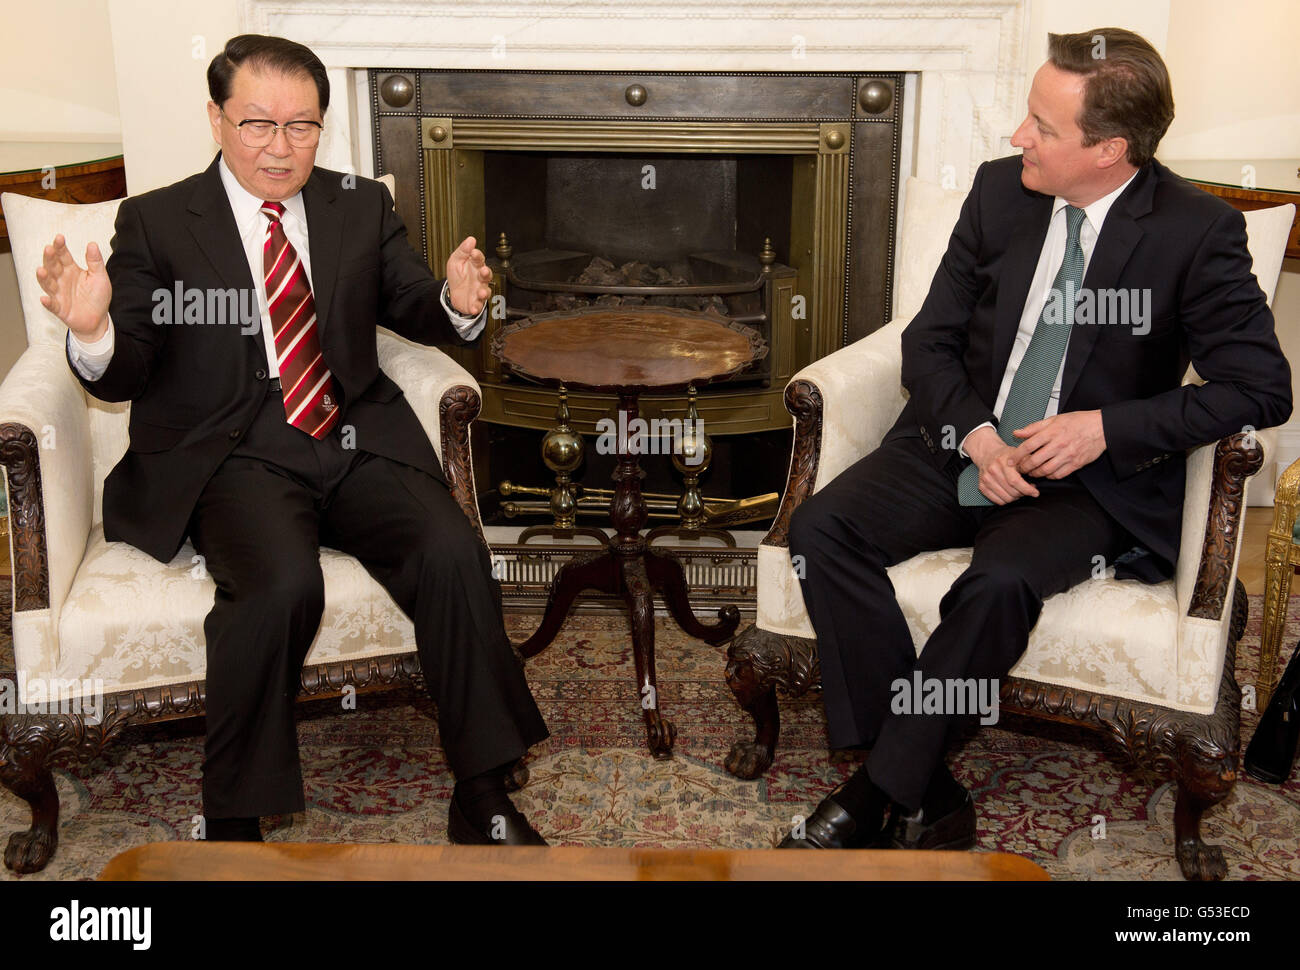 Il primo ministro David Cameron ha parlato con l'alto funzionario del Partito comunista cinese, il membro del Politburo li Changchun, al n. 10, per discutere gli sforzi volti ad approfondire le relazioni commerciali e culturali del Regno Unito con la Cina, nonché la cooperazione bilaterale su questioni globali come l'Iran e la Siria. Foto Stock